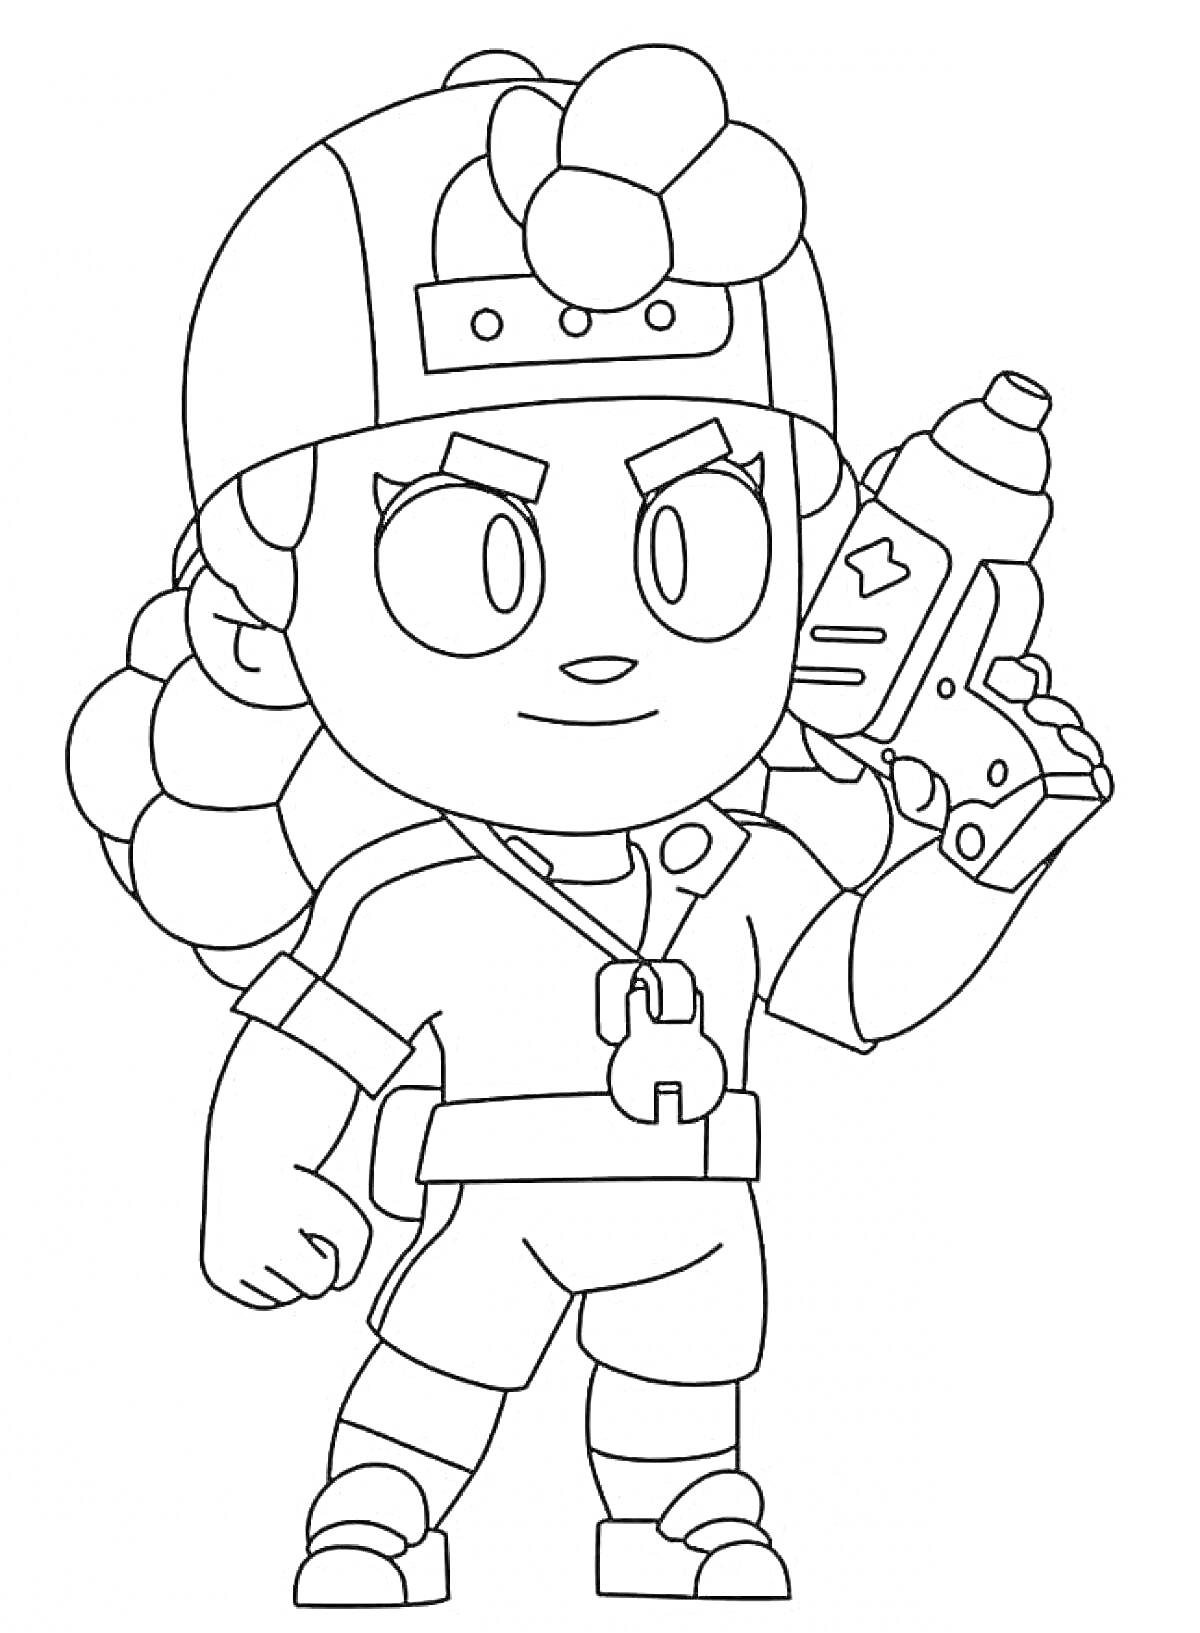 Персонаж из игры Brawl Stars, Эдгар, с водяным пистолетом в руках